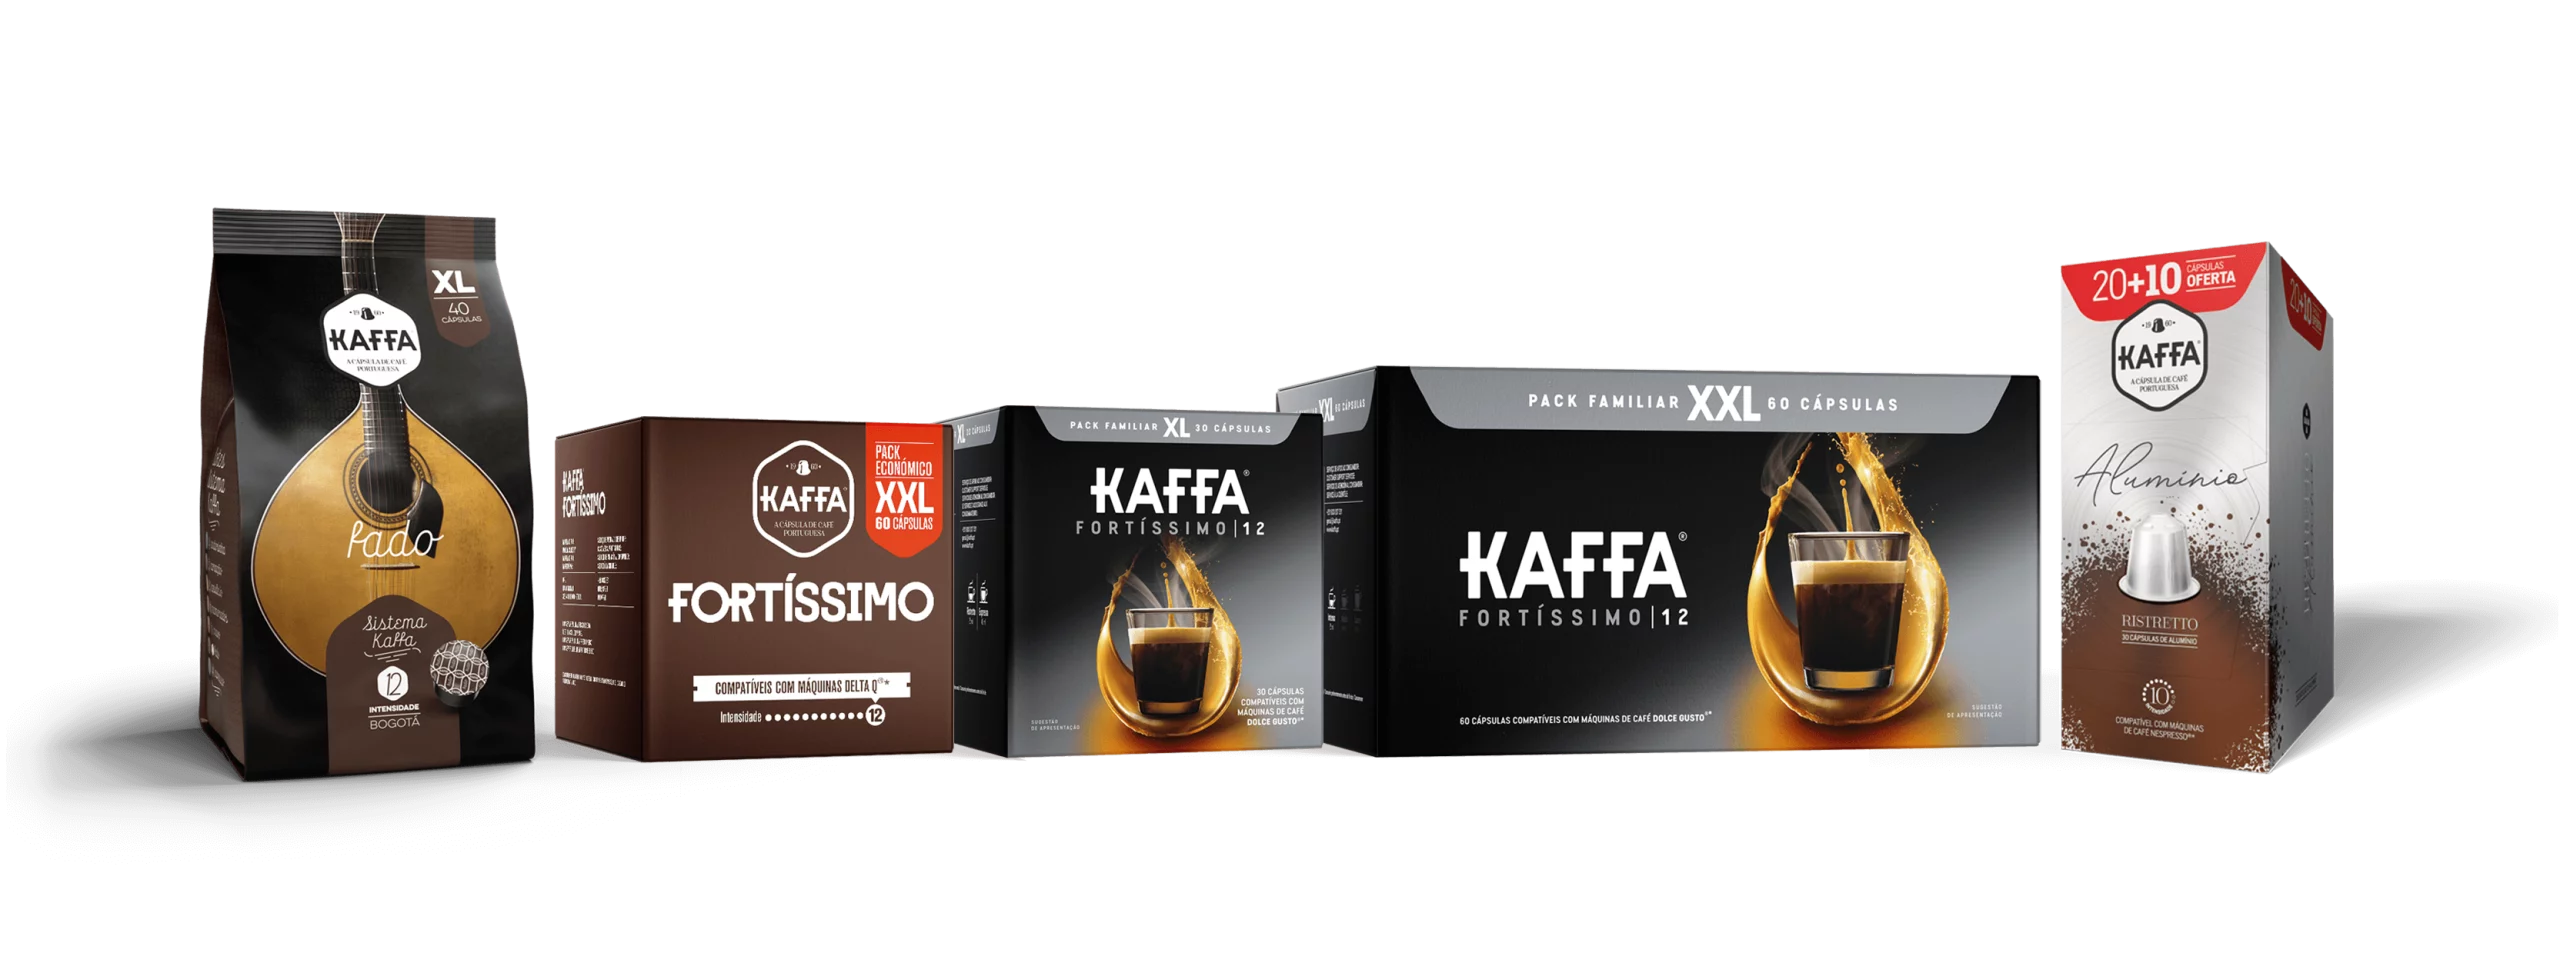 Kaffa-Packs-Promocionais